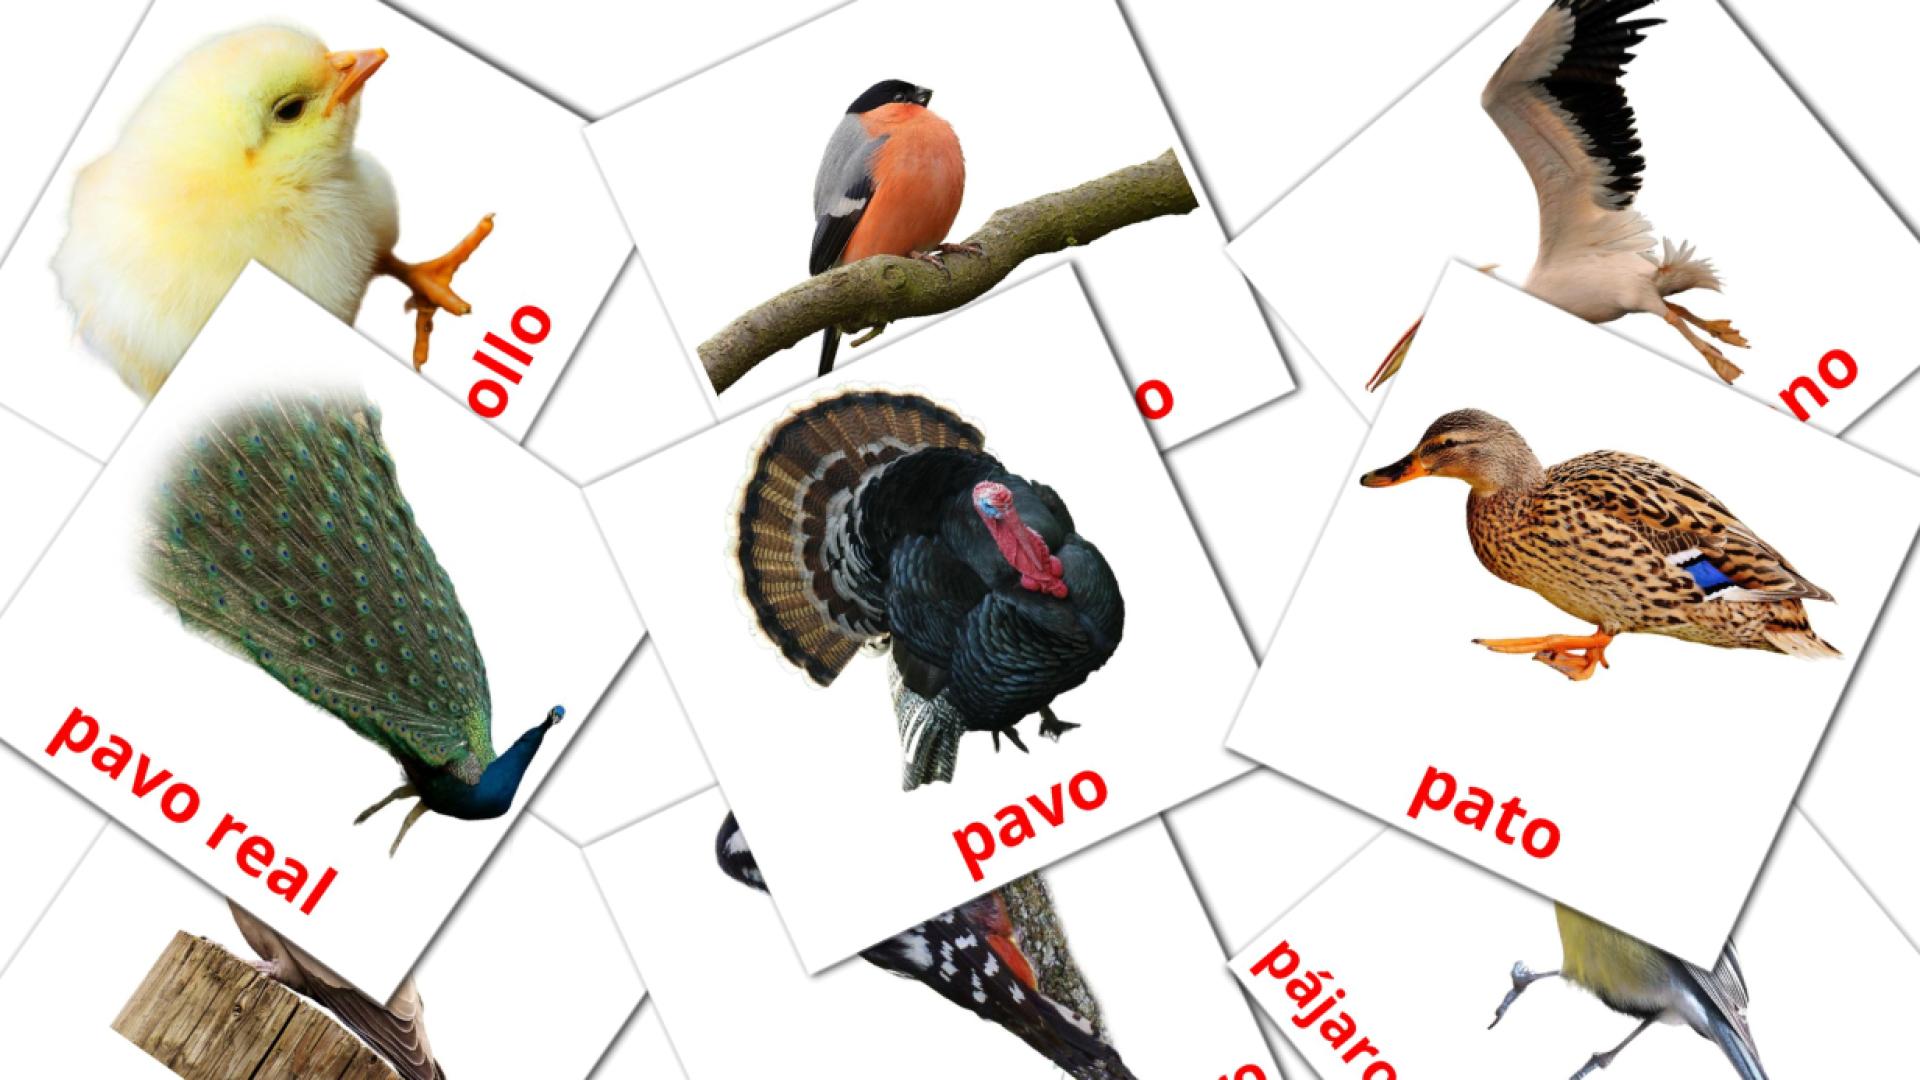 pashto tarjetas de vocabulario en Aves